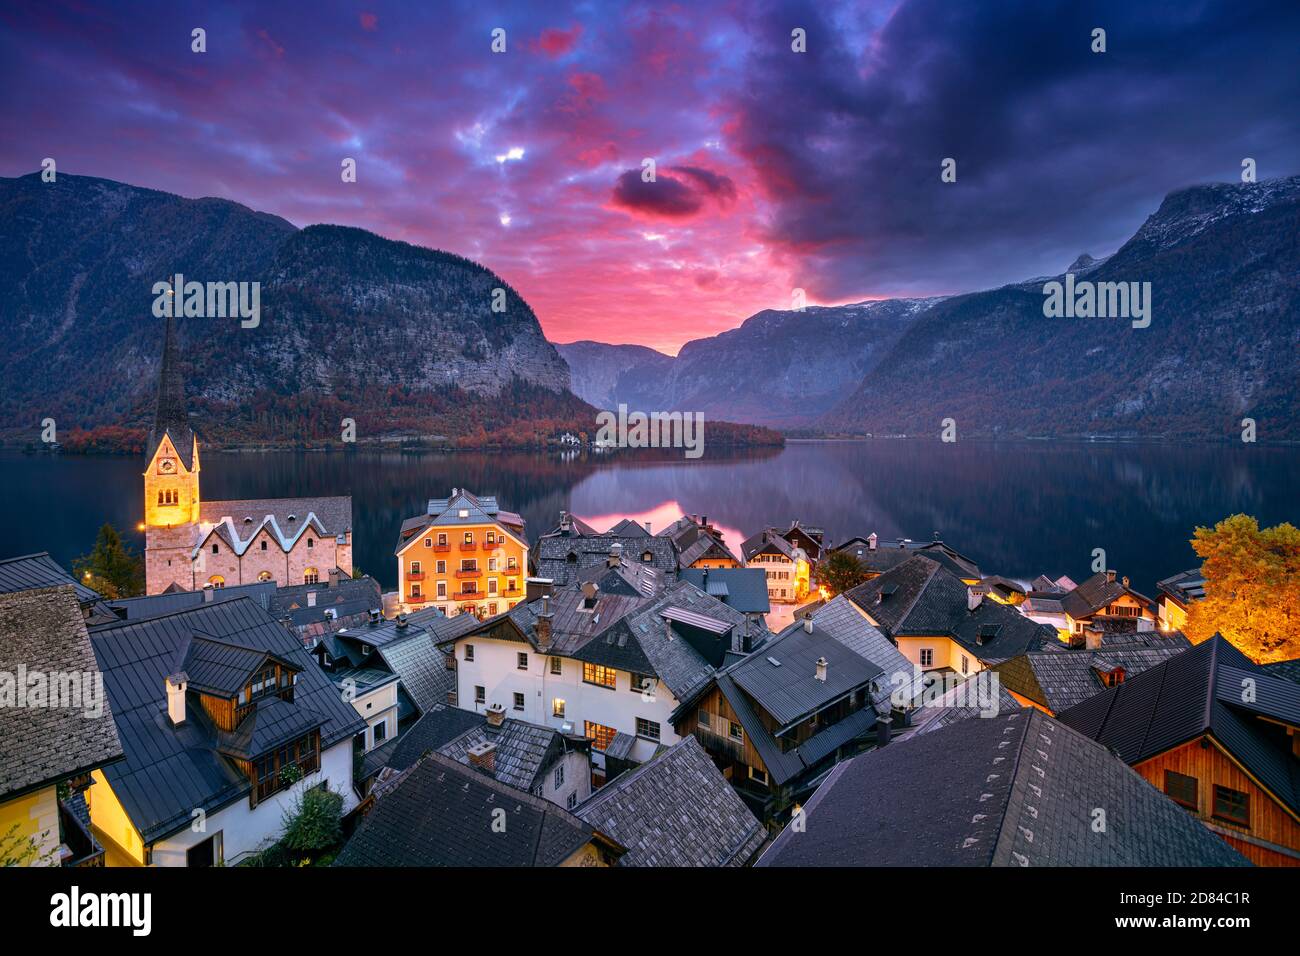 Hallstatt, Austria. Cityscape image of iconic alpine village Hallstatt at dramatic autumn sunrise. Stock Photo